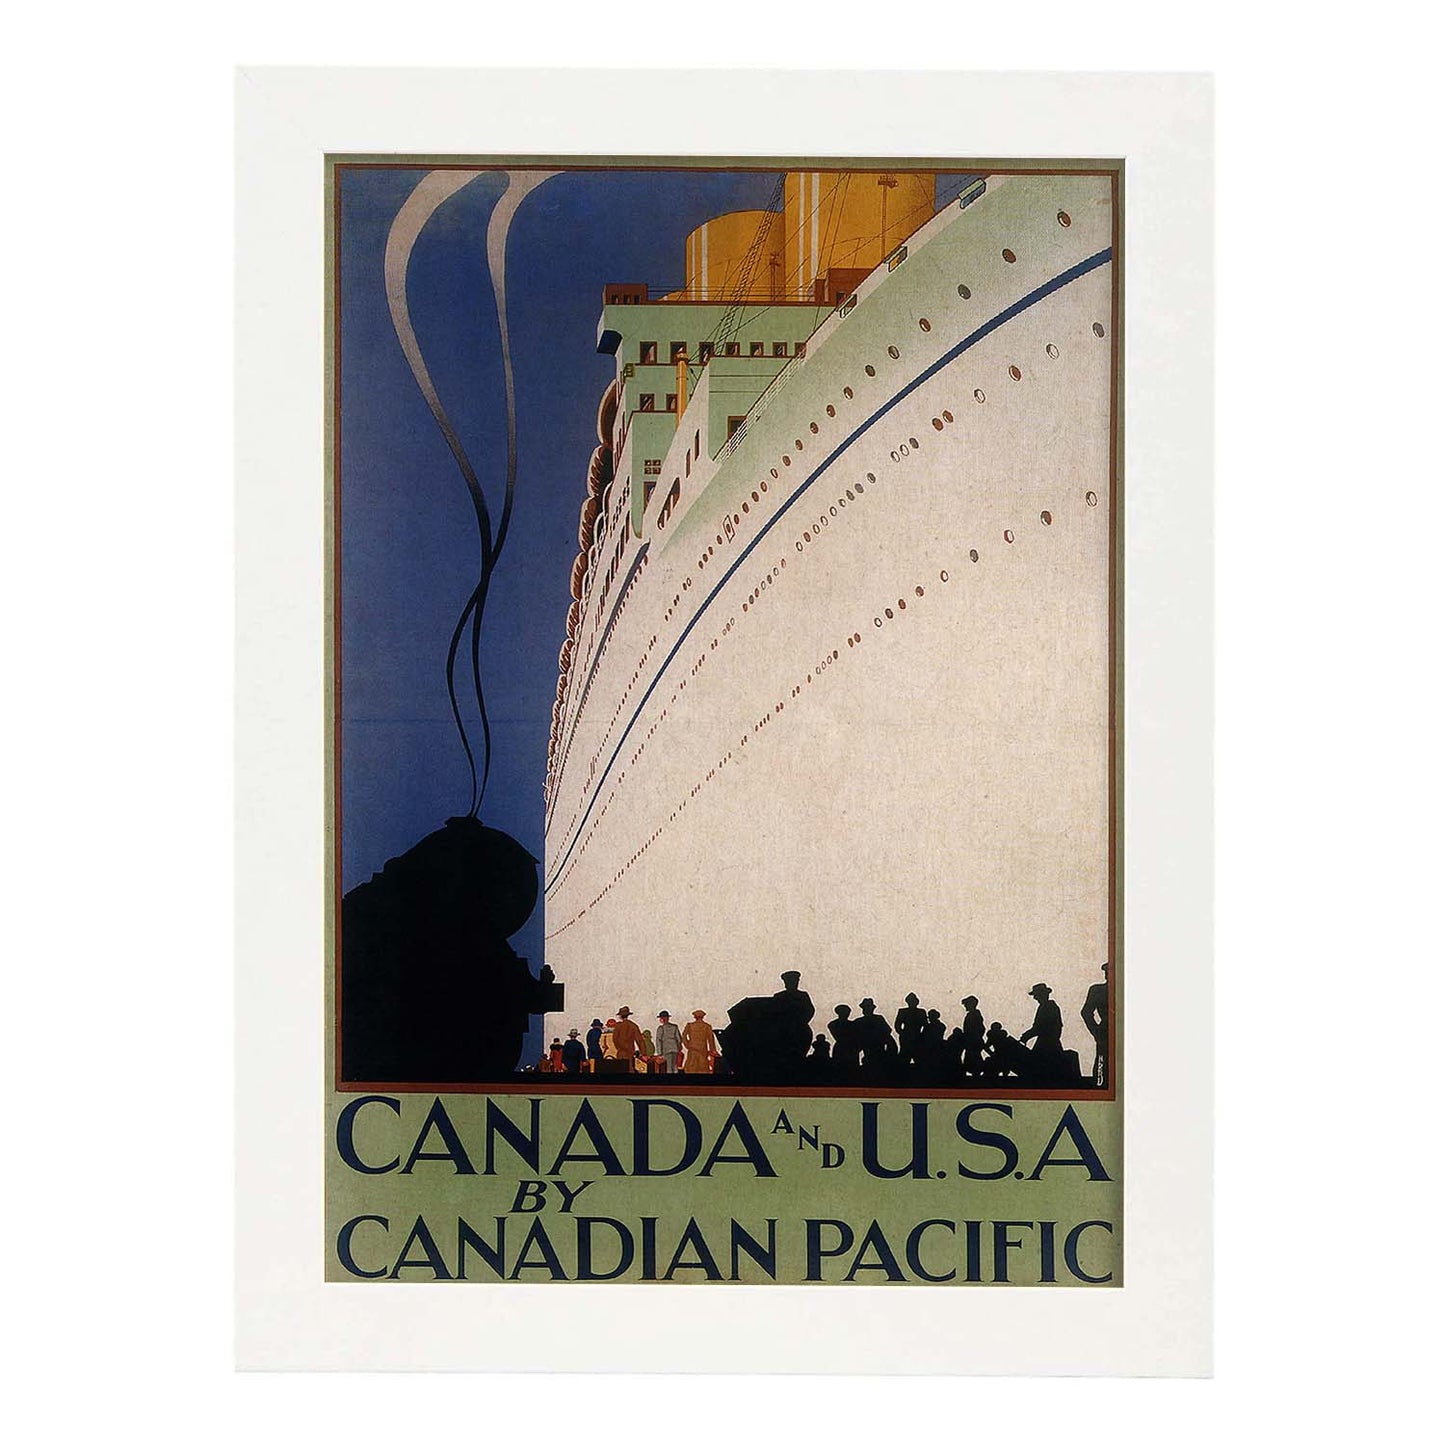 Poster Vintage. Cartel Vintage de América. Canadá y USA.-Artwork-Nacnic-A3-Marco Blanco-Nacnic Estudio SL